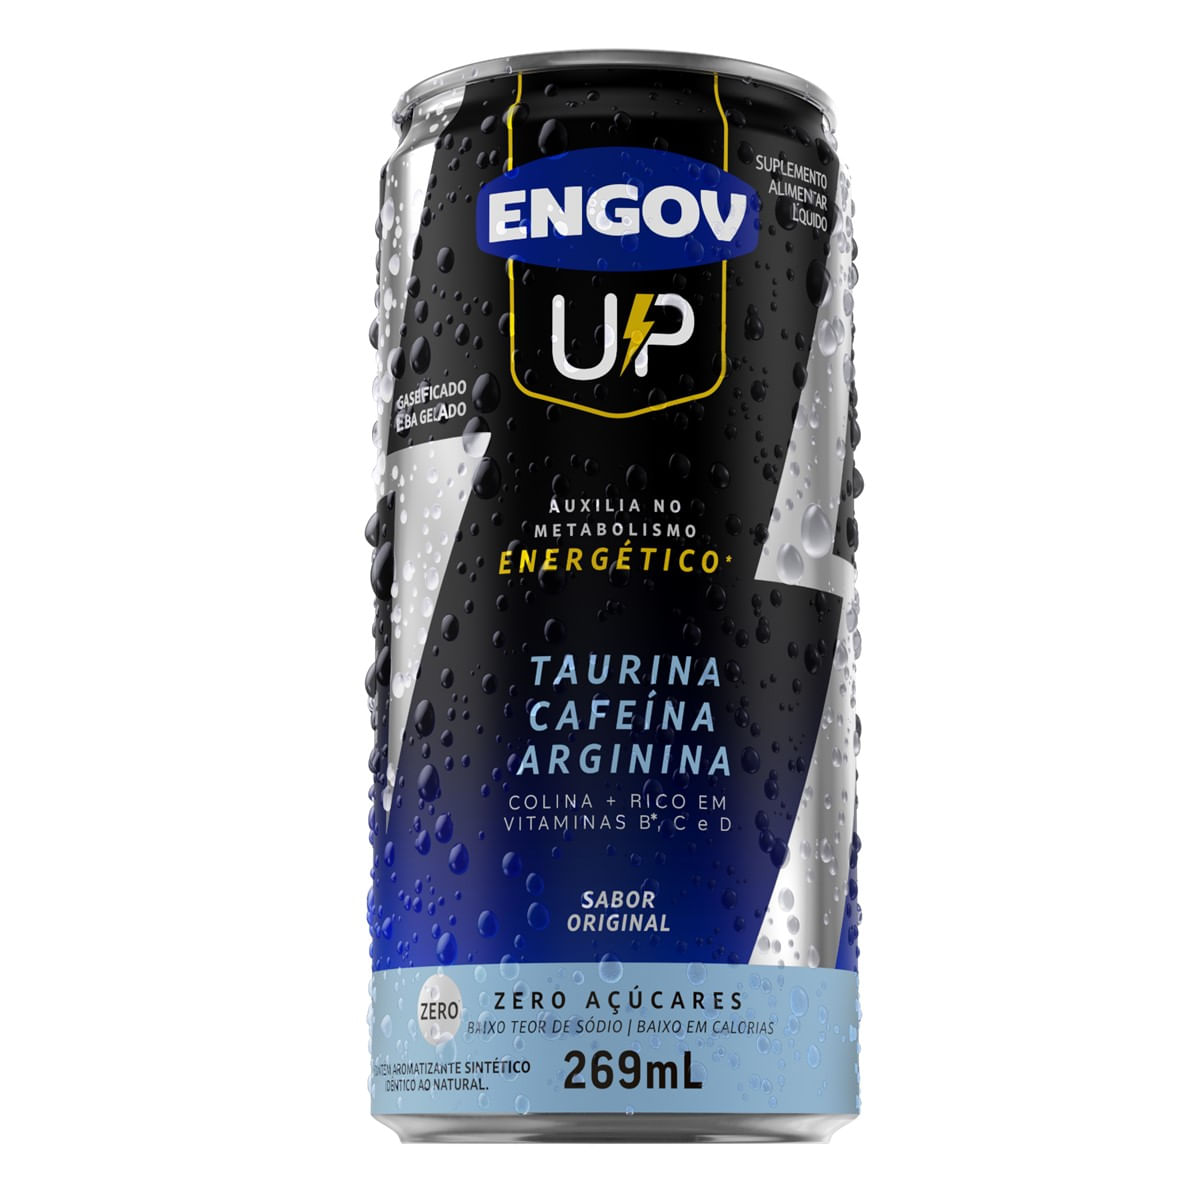 Engov-Up-Original-269ml